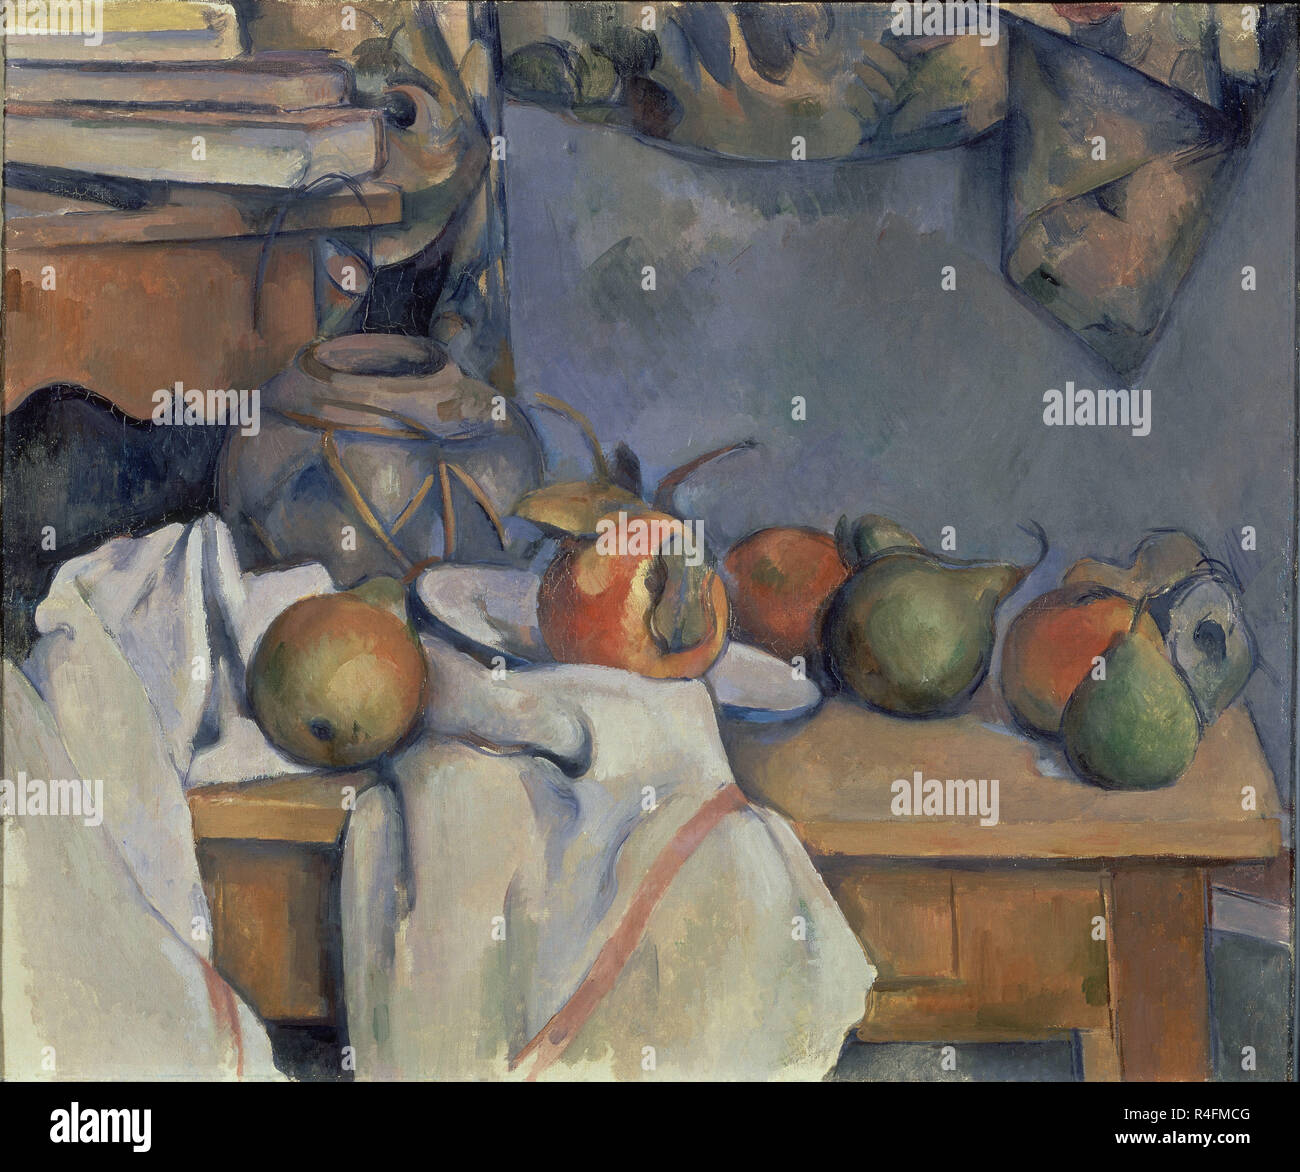 BODEGON CON GRANADAS Y PERAS-1890-3 OLEO-LIEN. Auteur : Cézanne, Paul. Emplacement : collection privée. WASHINGTON D. C. Banque D'Images